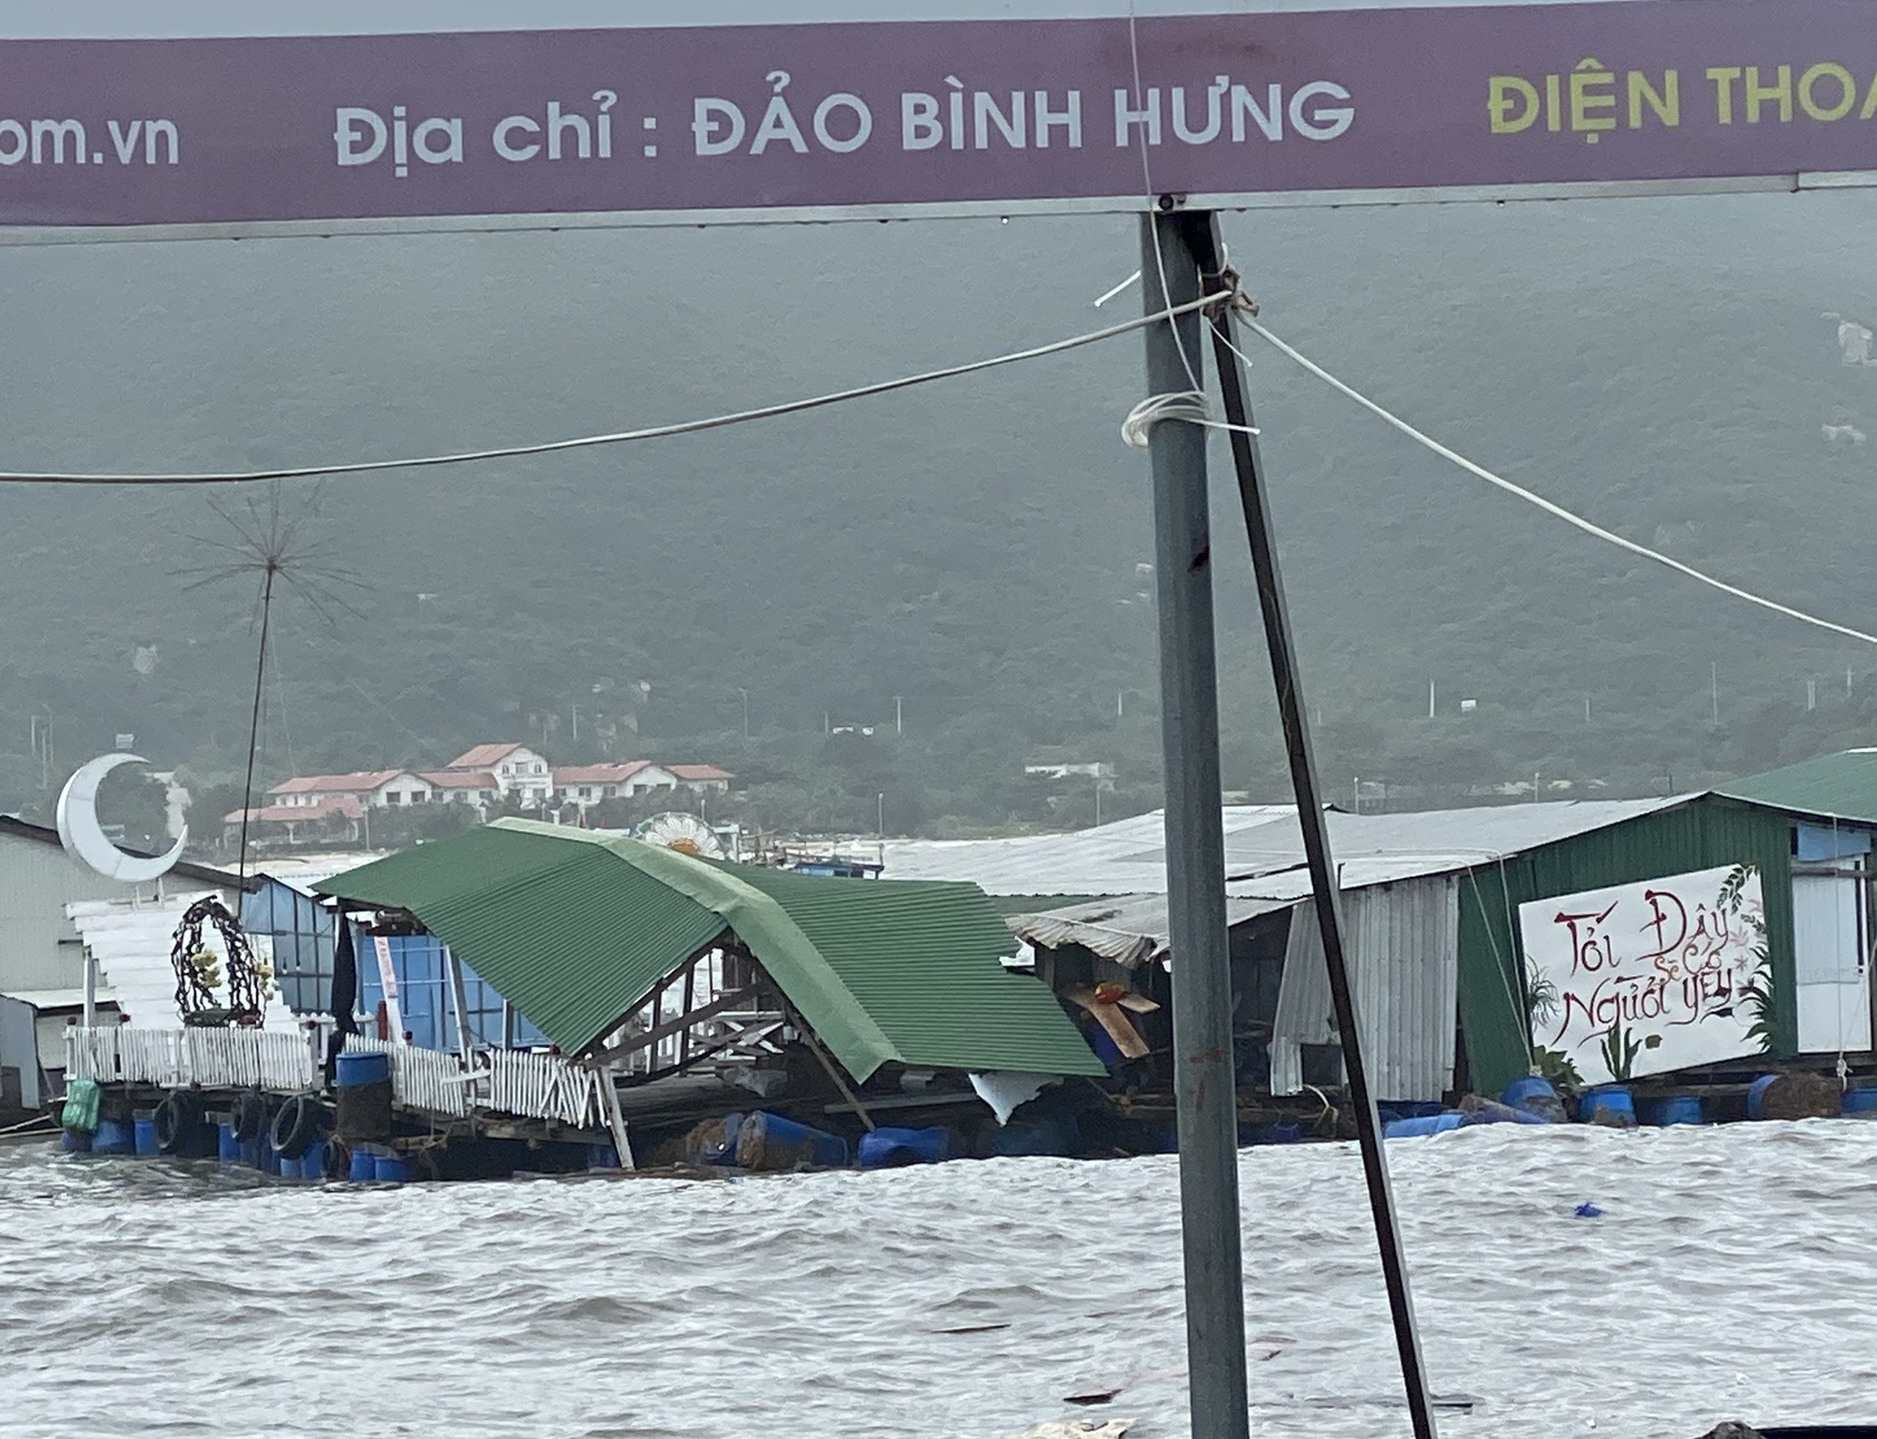 Do ảnh hưởng của bão RAI, bè du lịch và bè nuôi tôm hùm bị sóng đánh vỡ